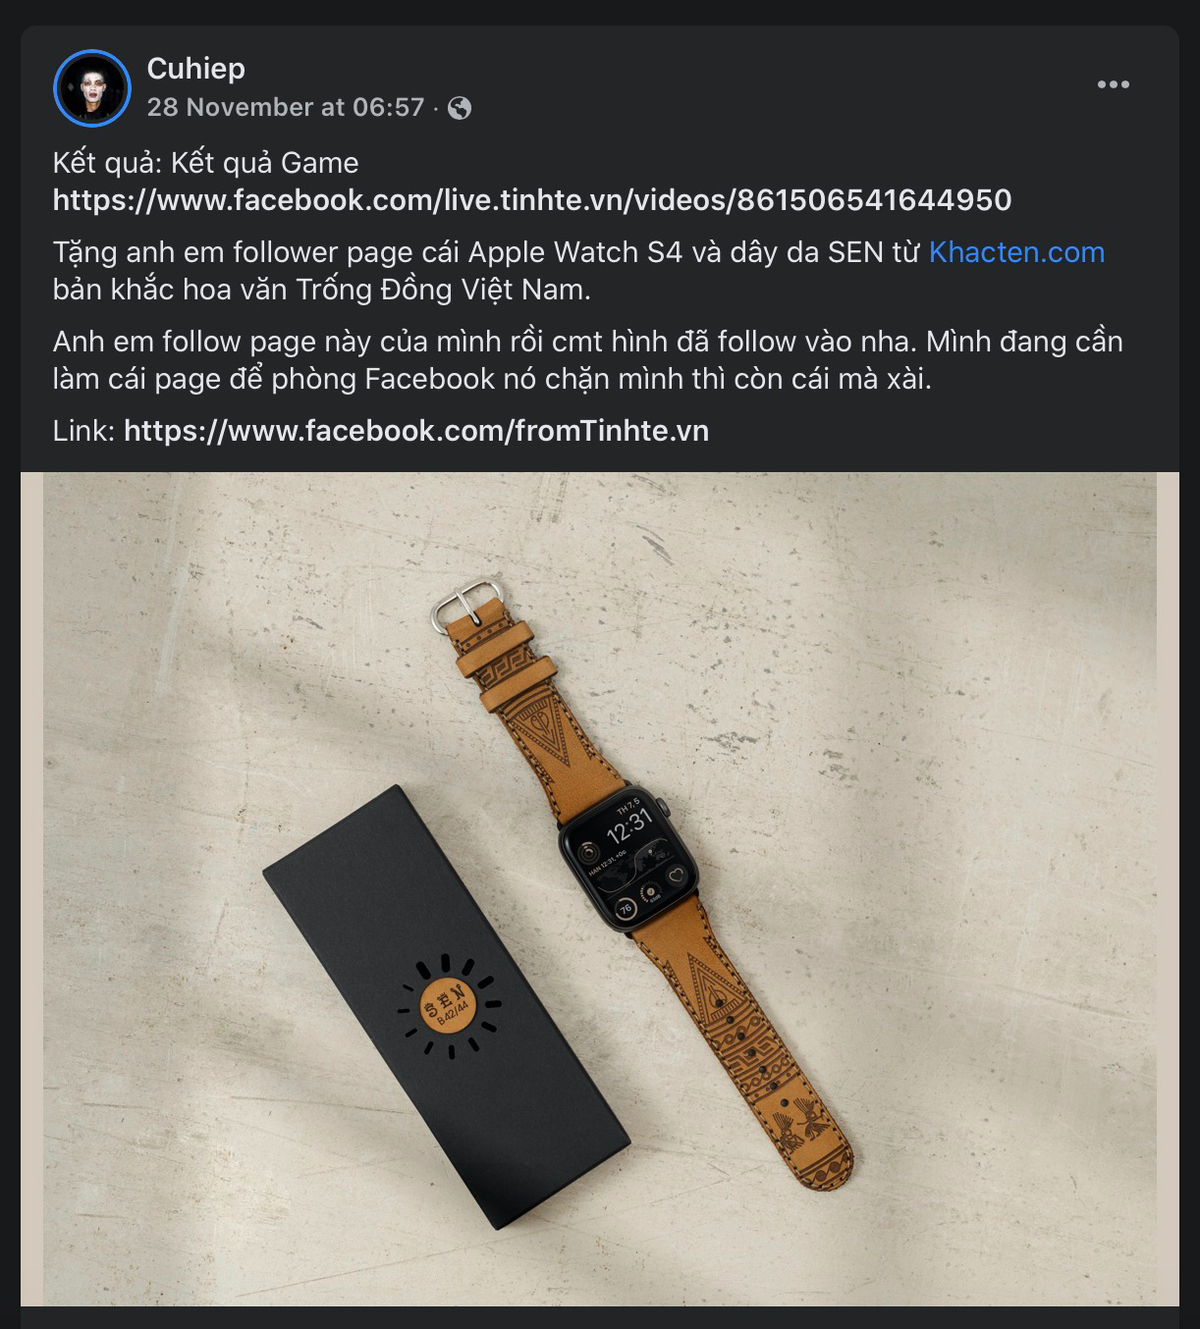 [Kết quả game cuhiep]: Tặng Apple Watch S4 và dây da SEN